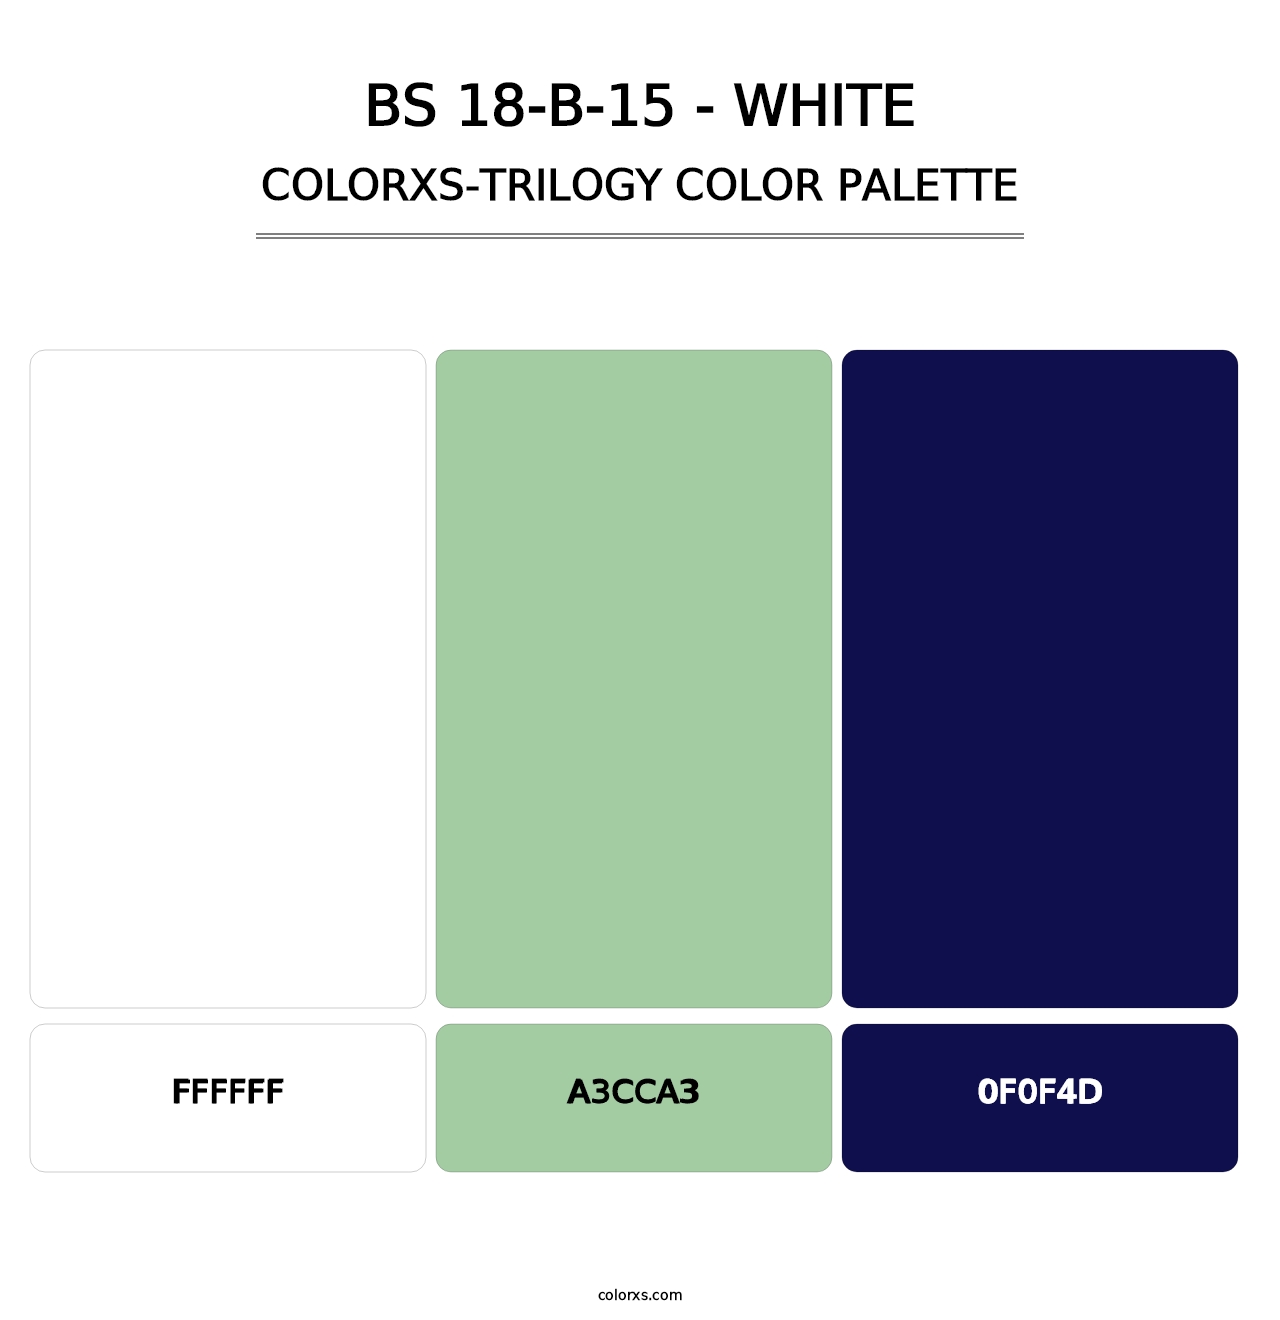 BS 18-B-15 - White - Colorxs Trilogy Palette